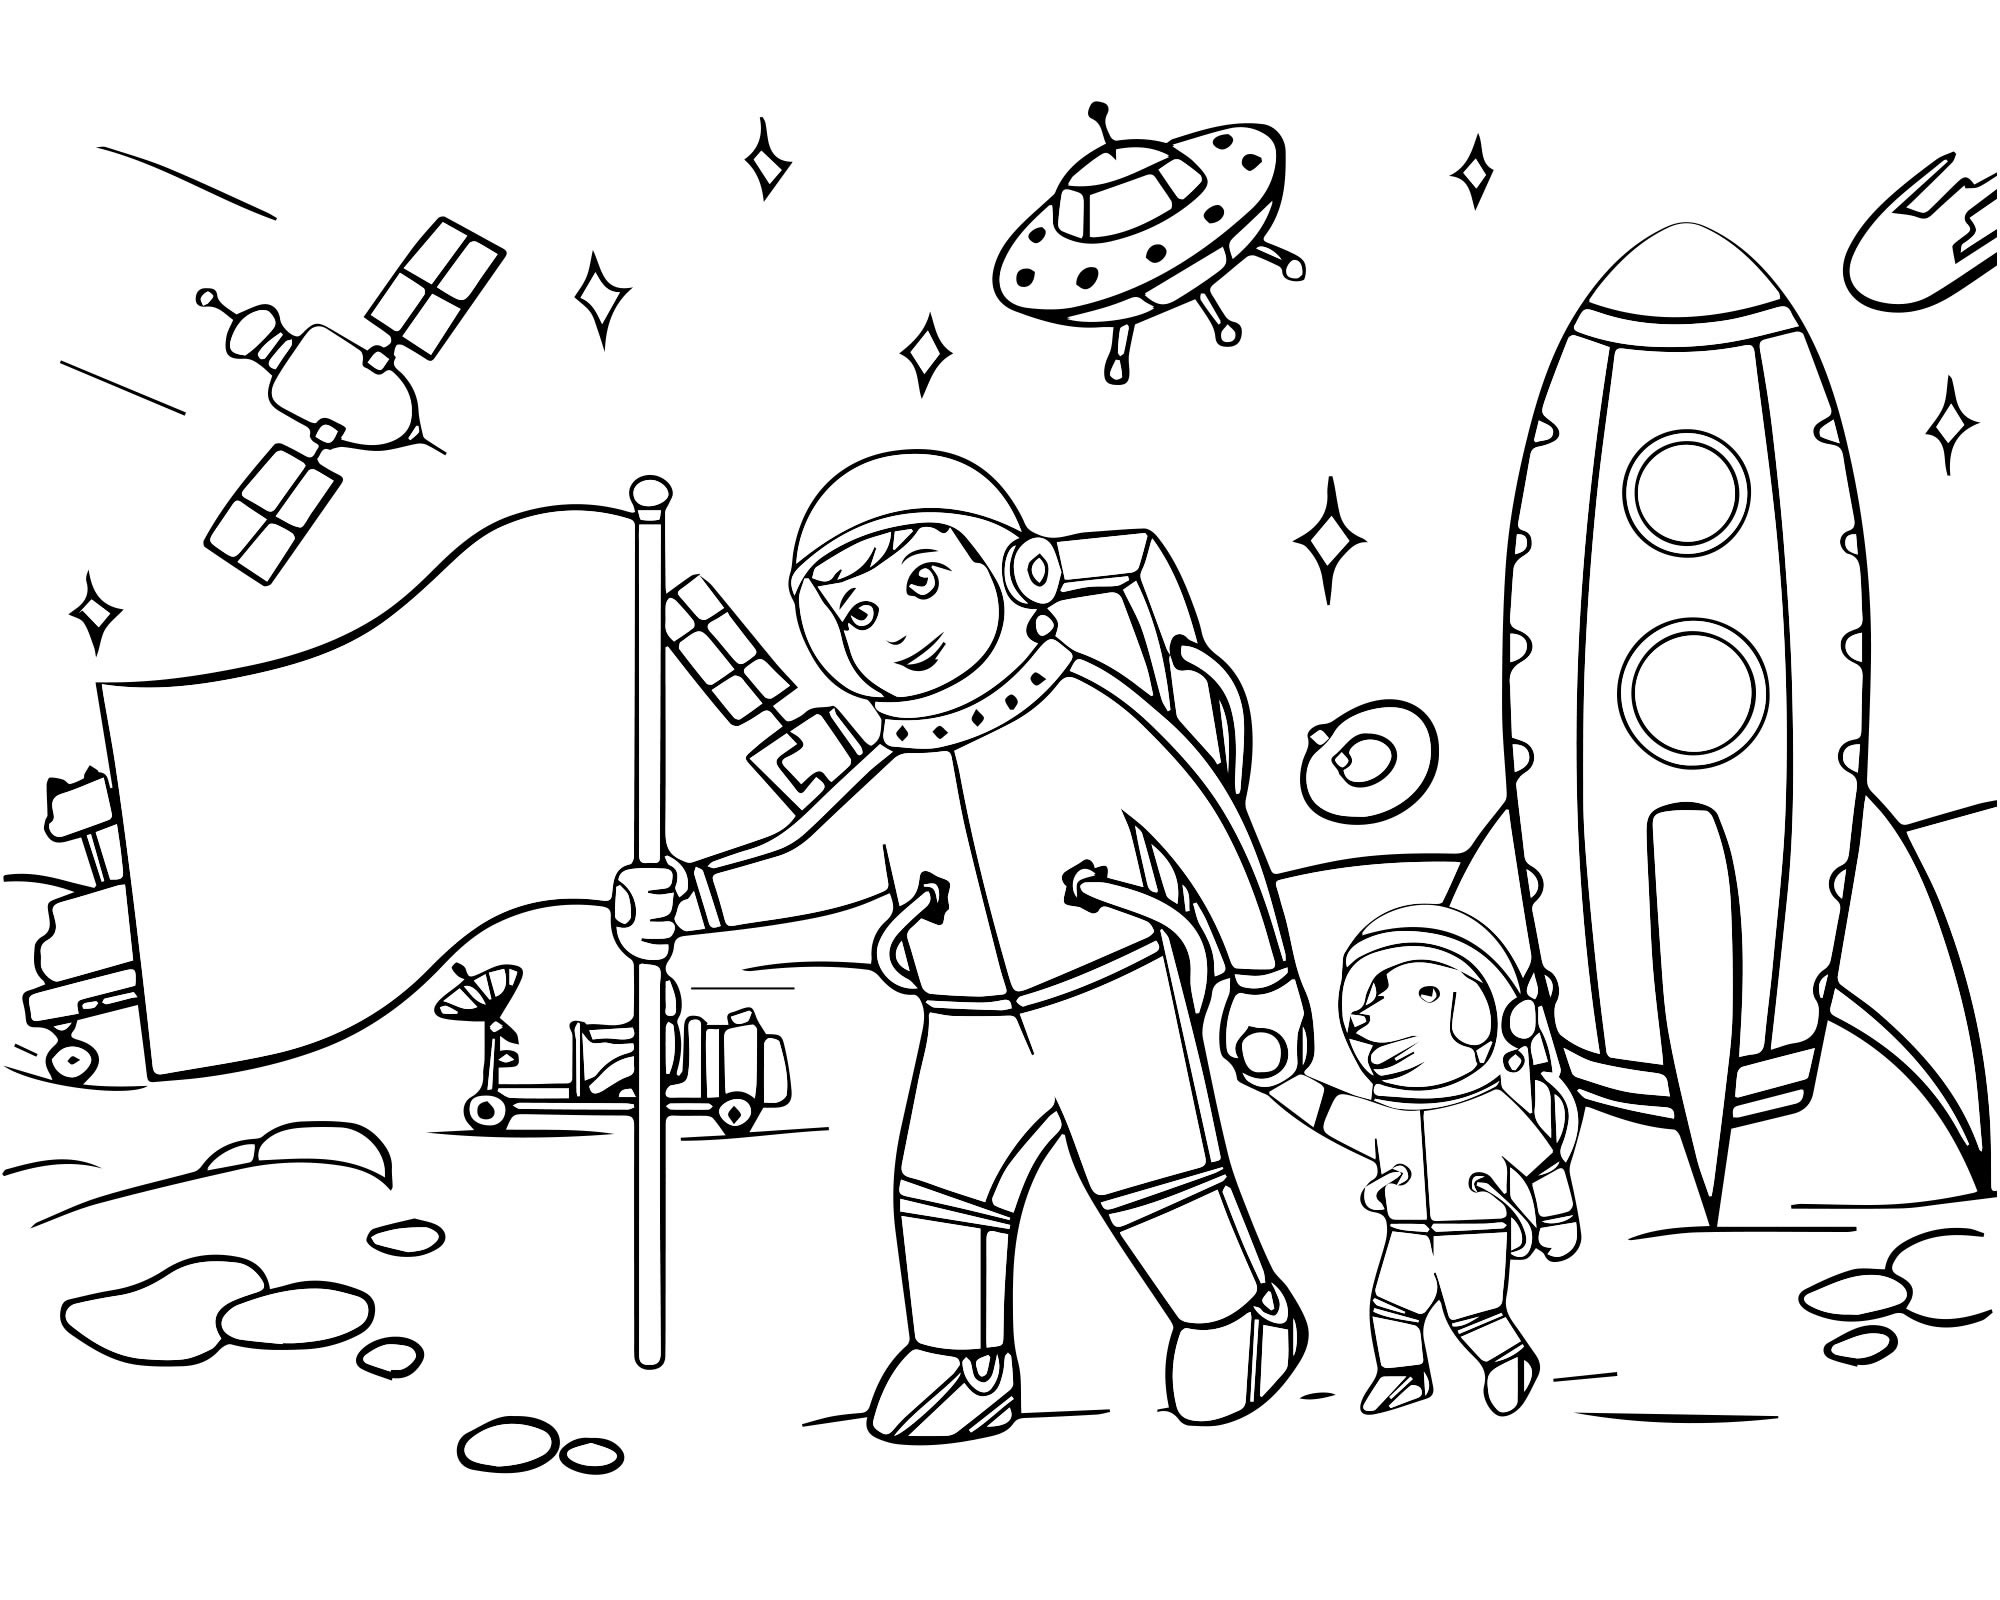 День космонавтики для детей 6 лет. Раскраска. В космосе. Космос раскраска для детей. Раскраска день космонавтики для детей. Космические раскраски для детей.